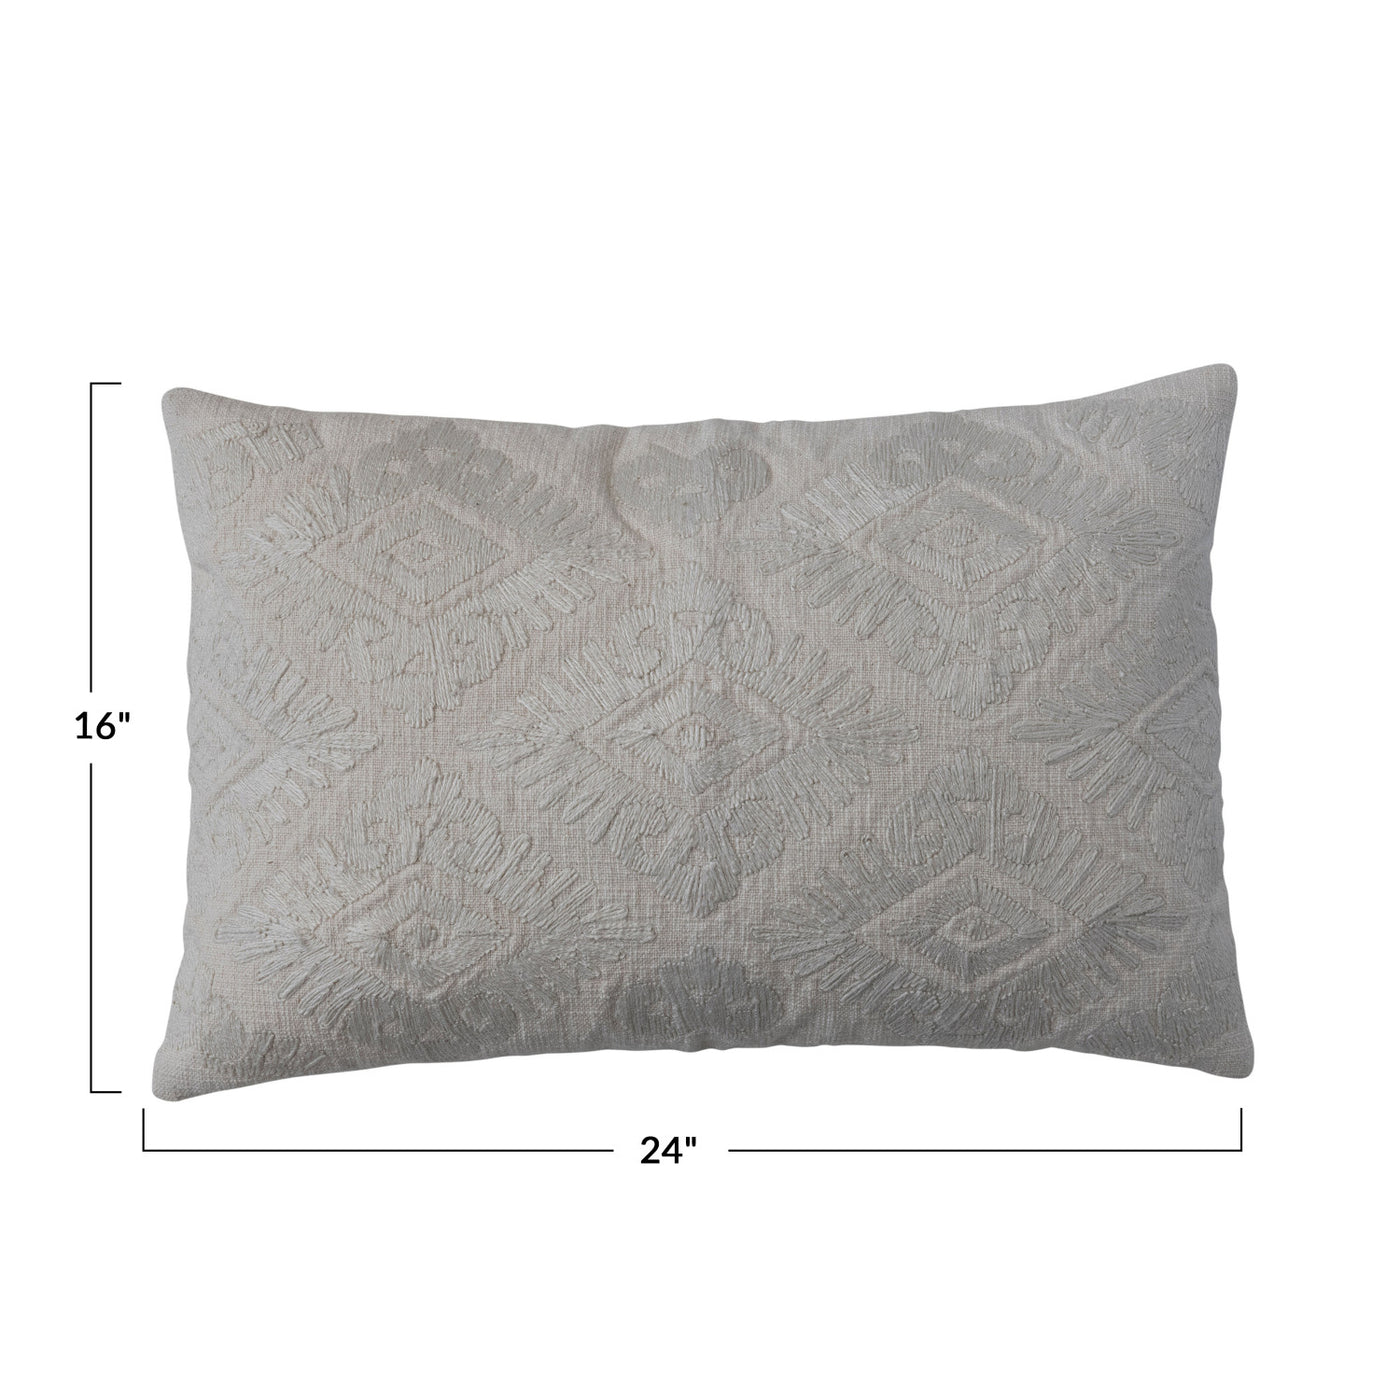 Cream Embroidered Lumbar Pillow